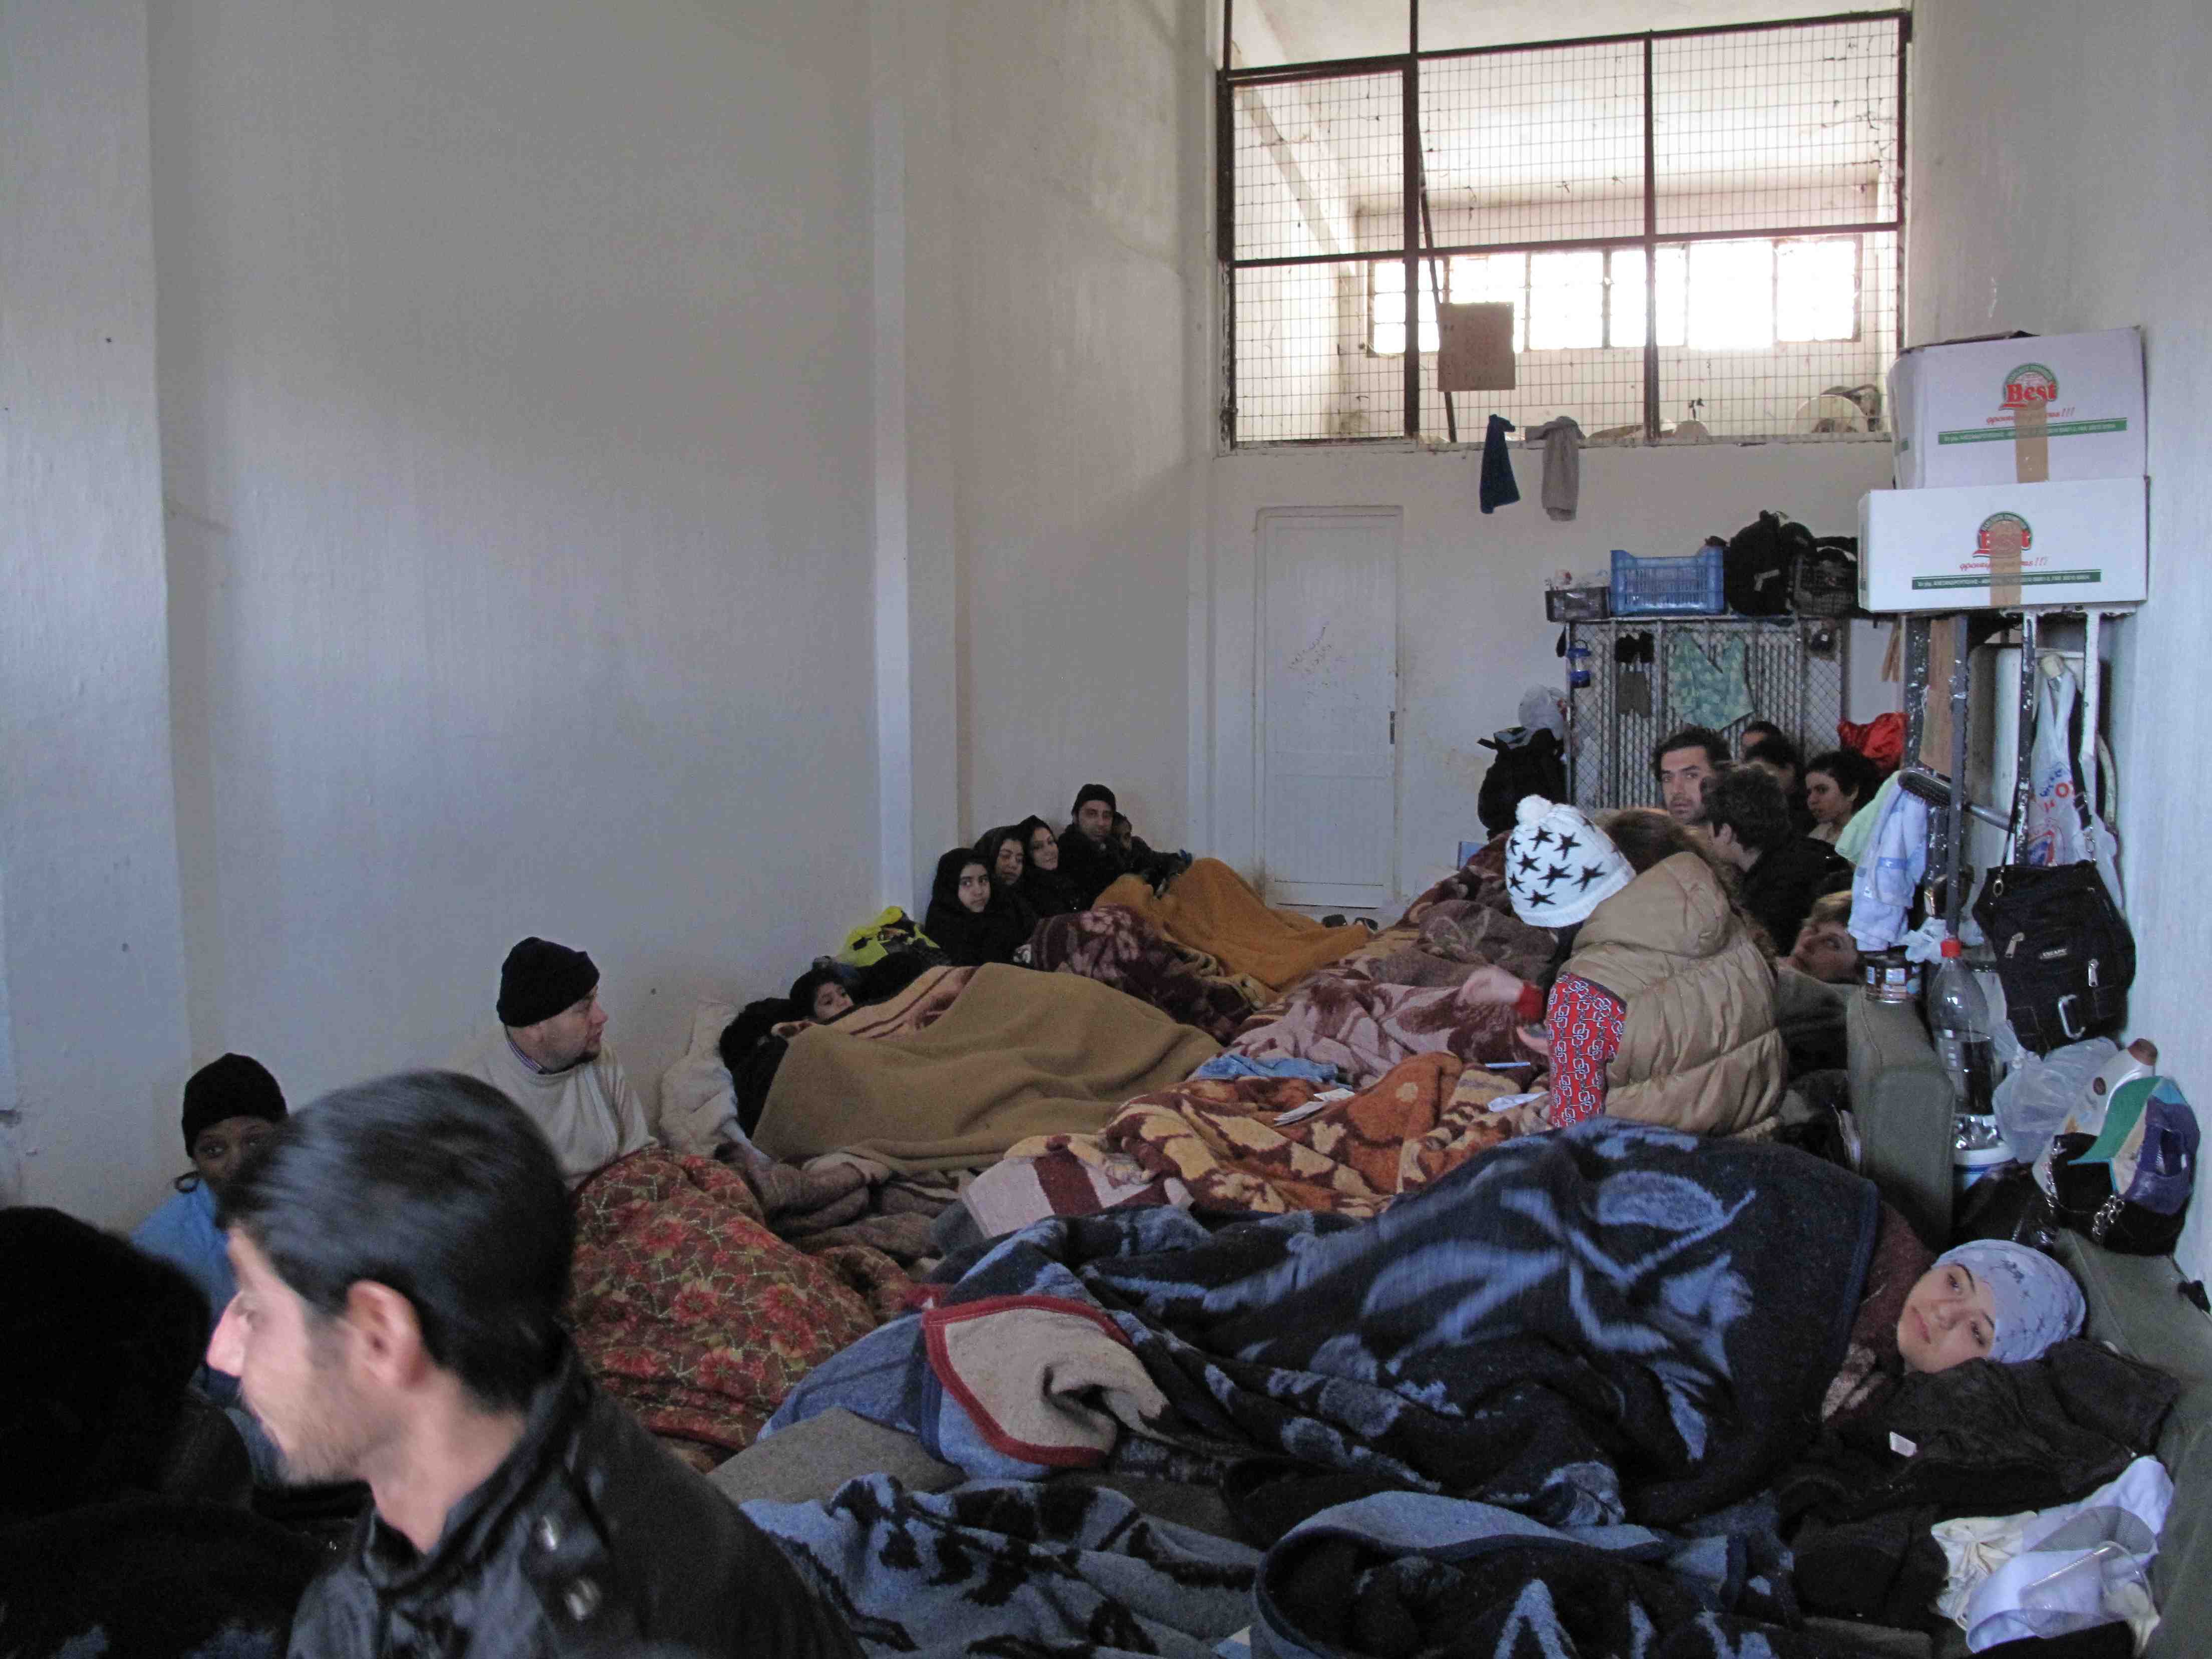 Las condiciones de detención de migrantes en Grecia son “inhumanas”